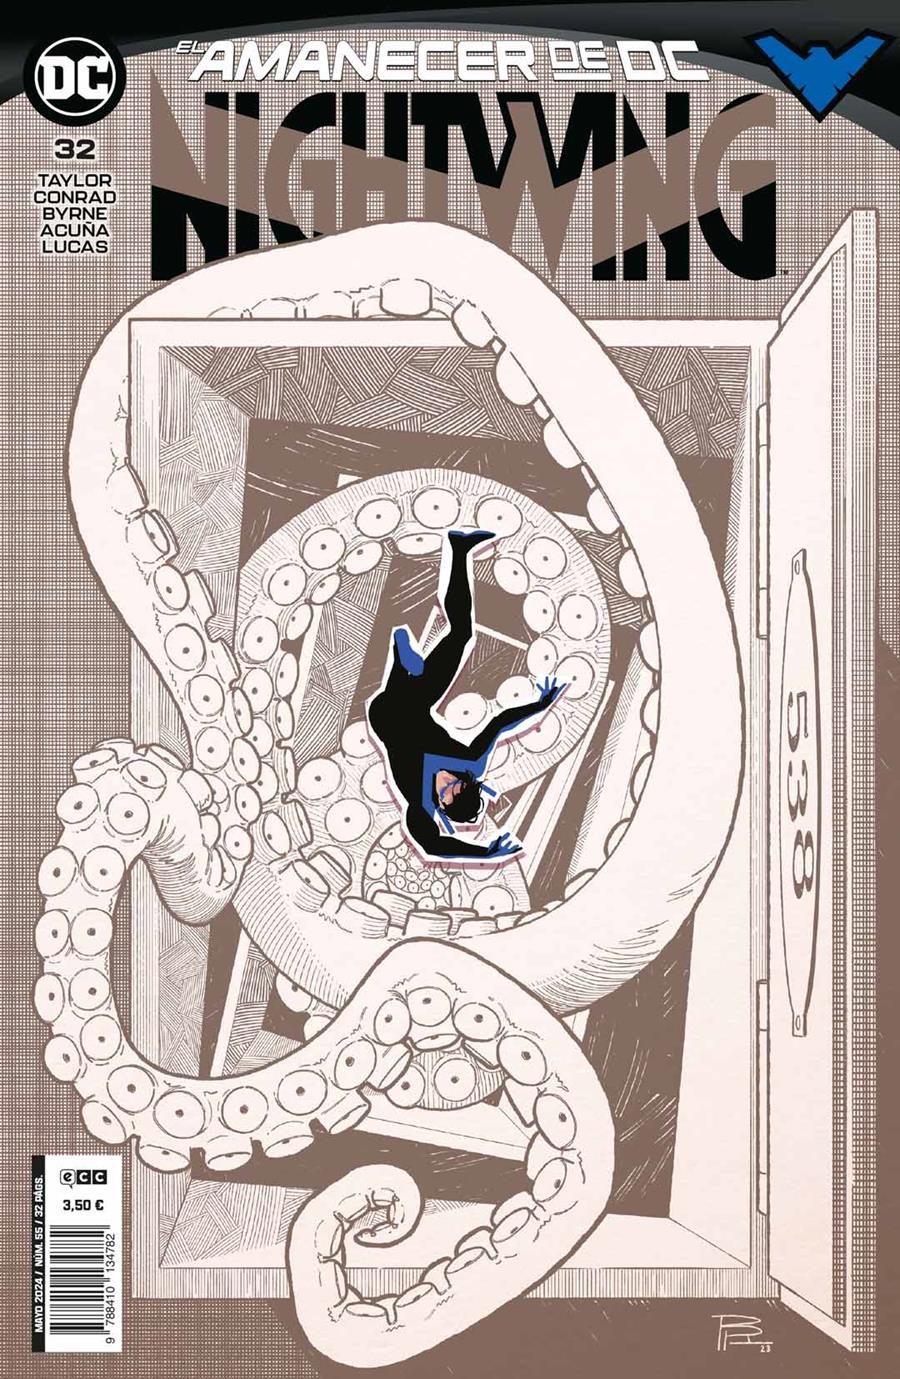 Nightwing núm. 32 | N0524-ECC28 | Michael W. Conrad / Serg Acuña / Stephen Byrne / Tom Taylor | Terra de Còmic - Tu tienda de cómics online especializada en cómics, manga y merchandising